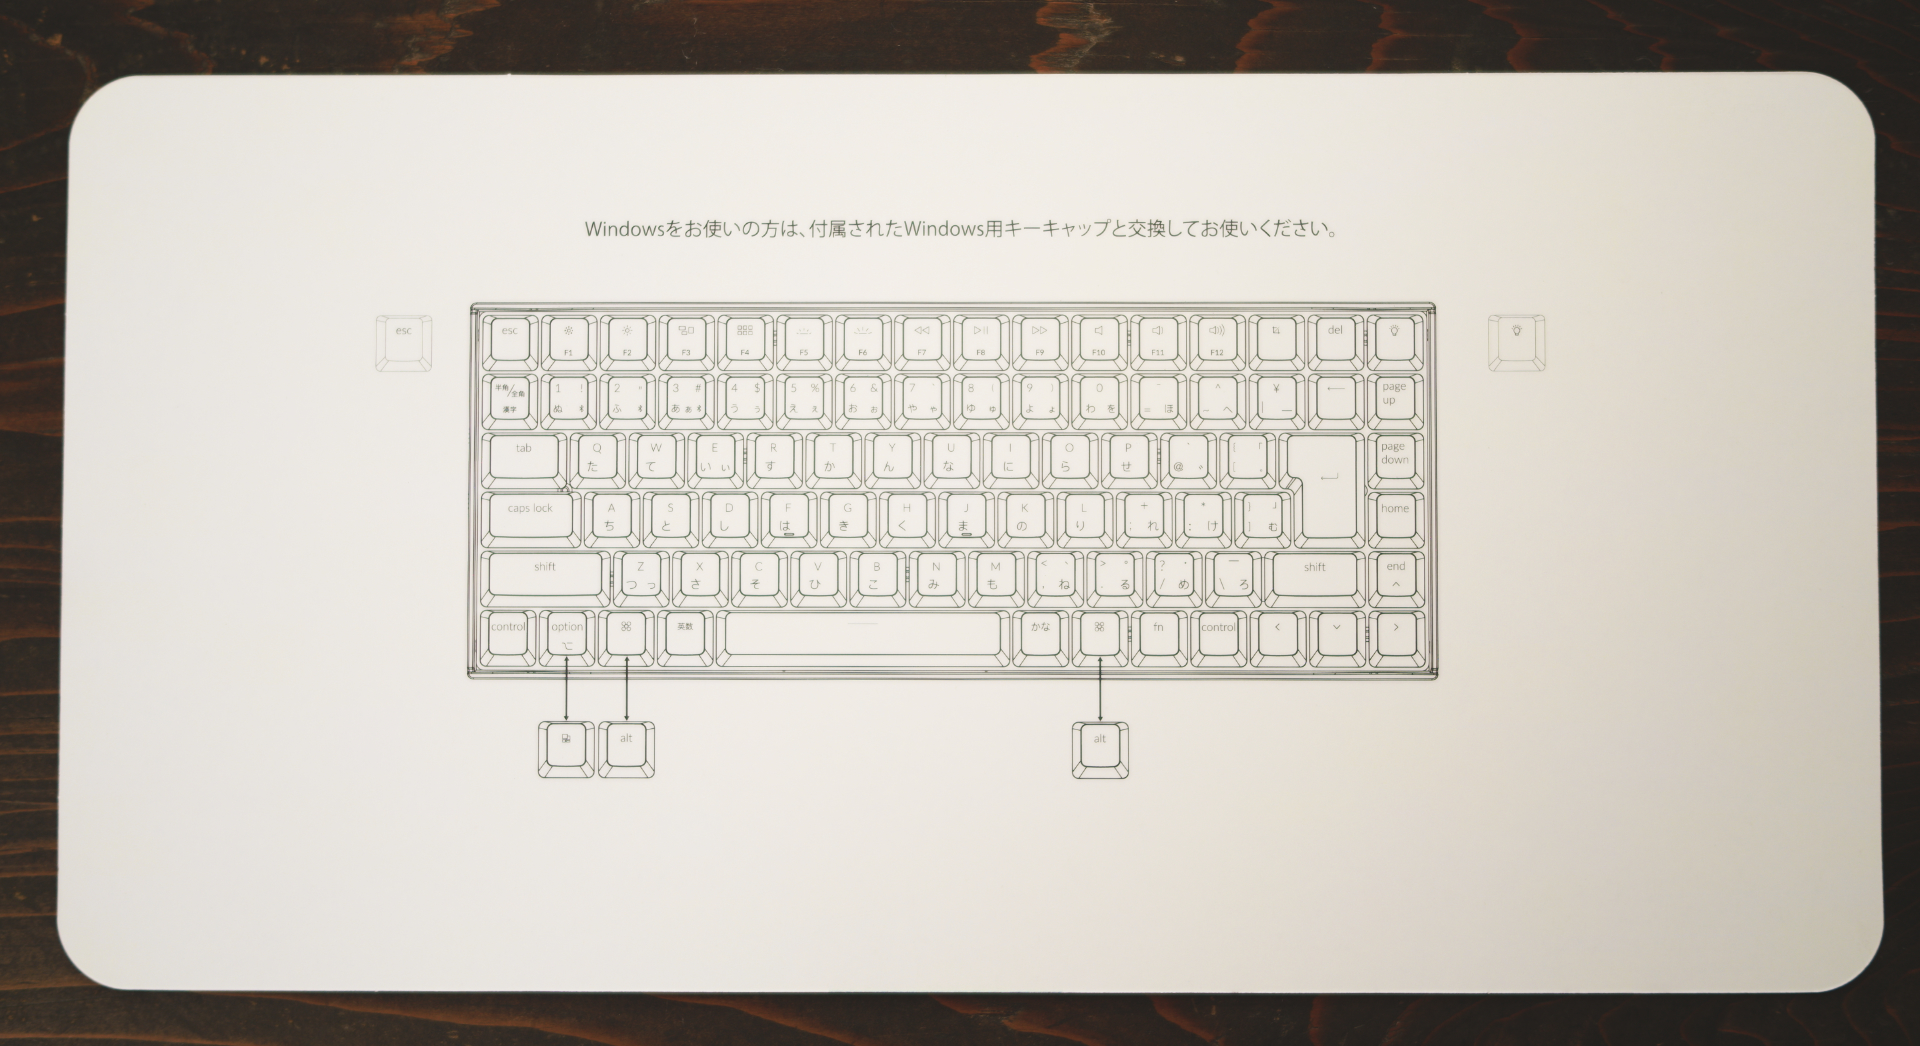 Keychron K2 日本語配列メカニカルキーボード Windows用キーキャップ変更表